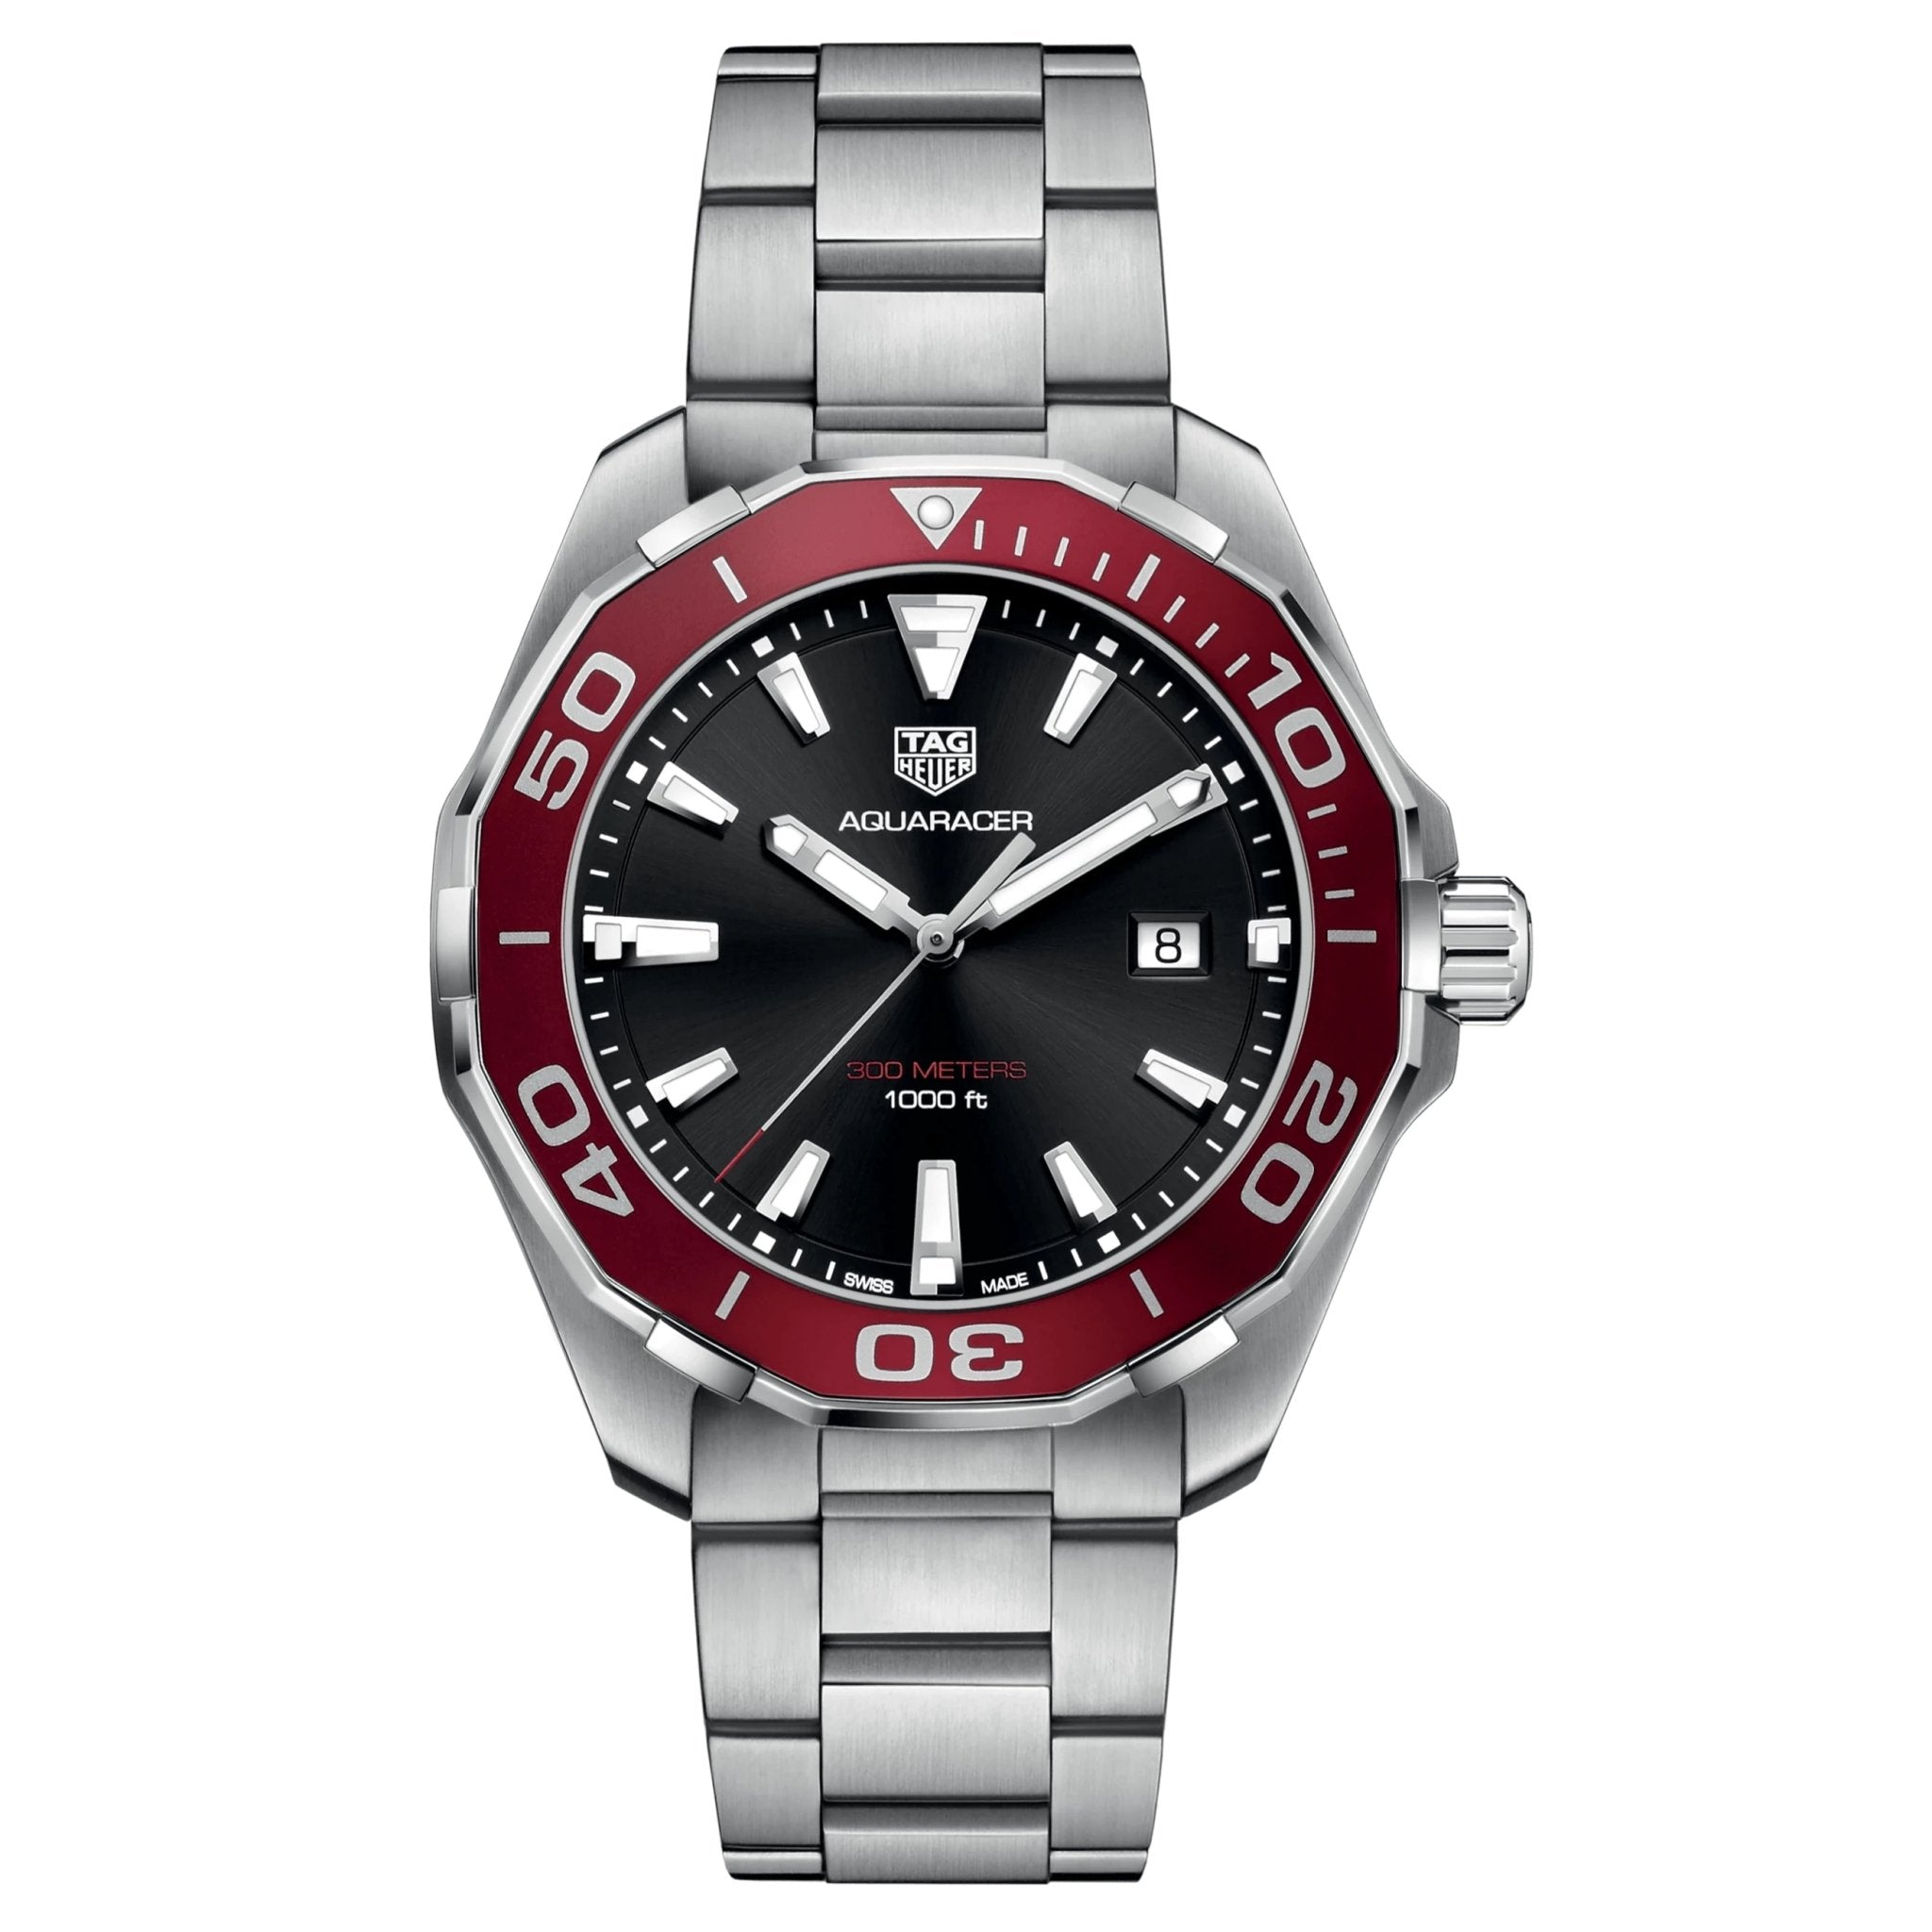 TAG HEUER Aquaracer Quartz Watch WAY101B.BA0746 - Watches & Crystals